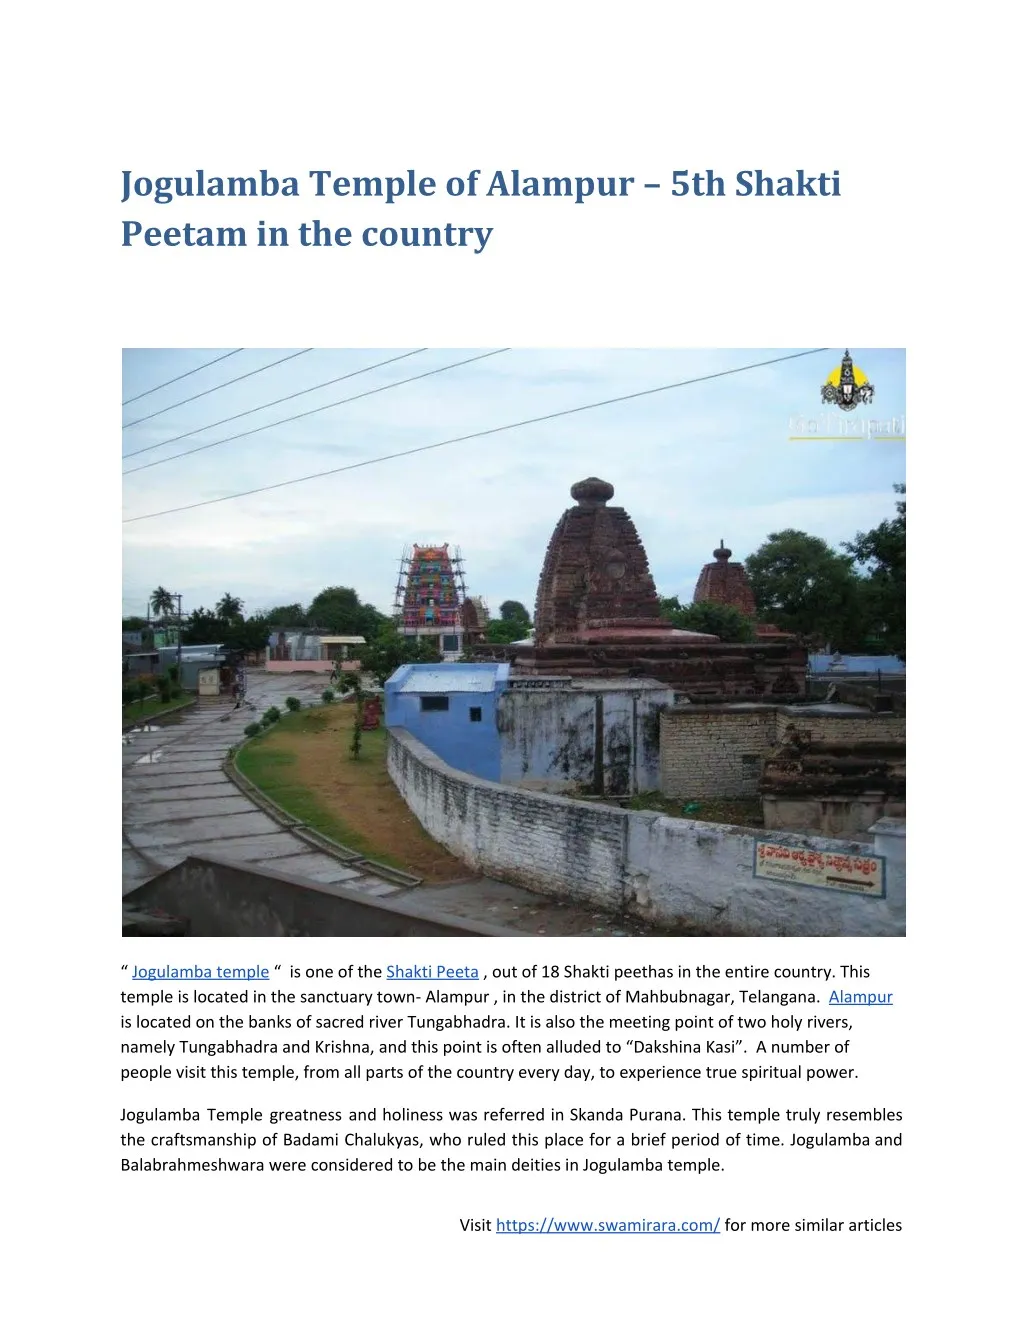 jogulamba temple of alampur 5th shakti peetam